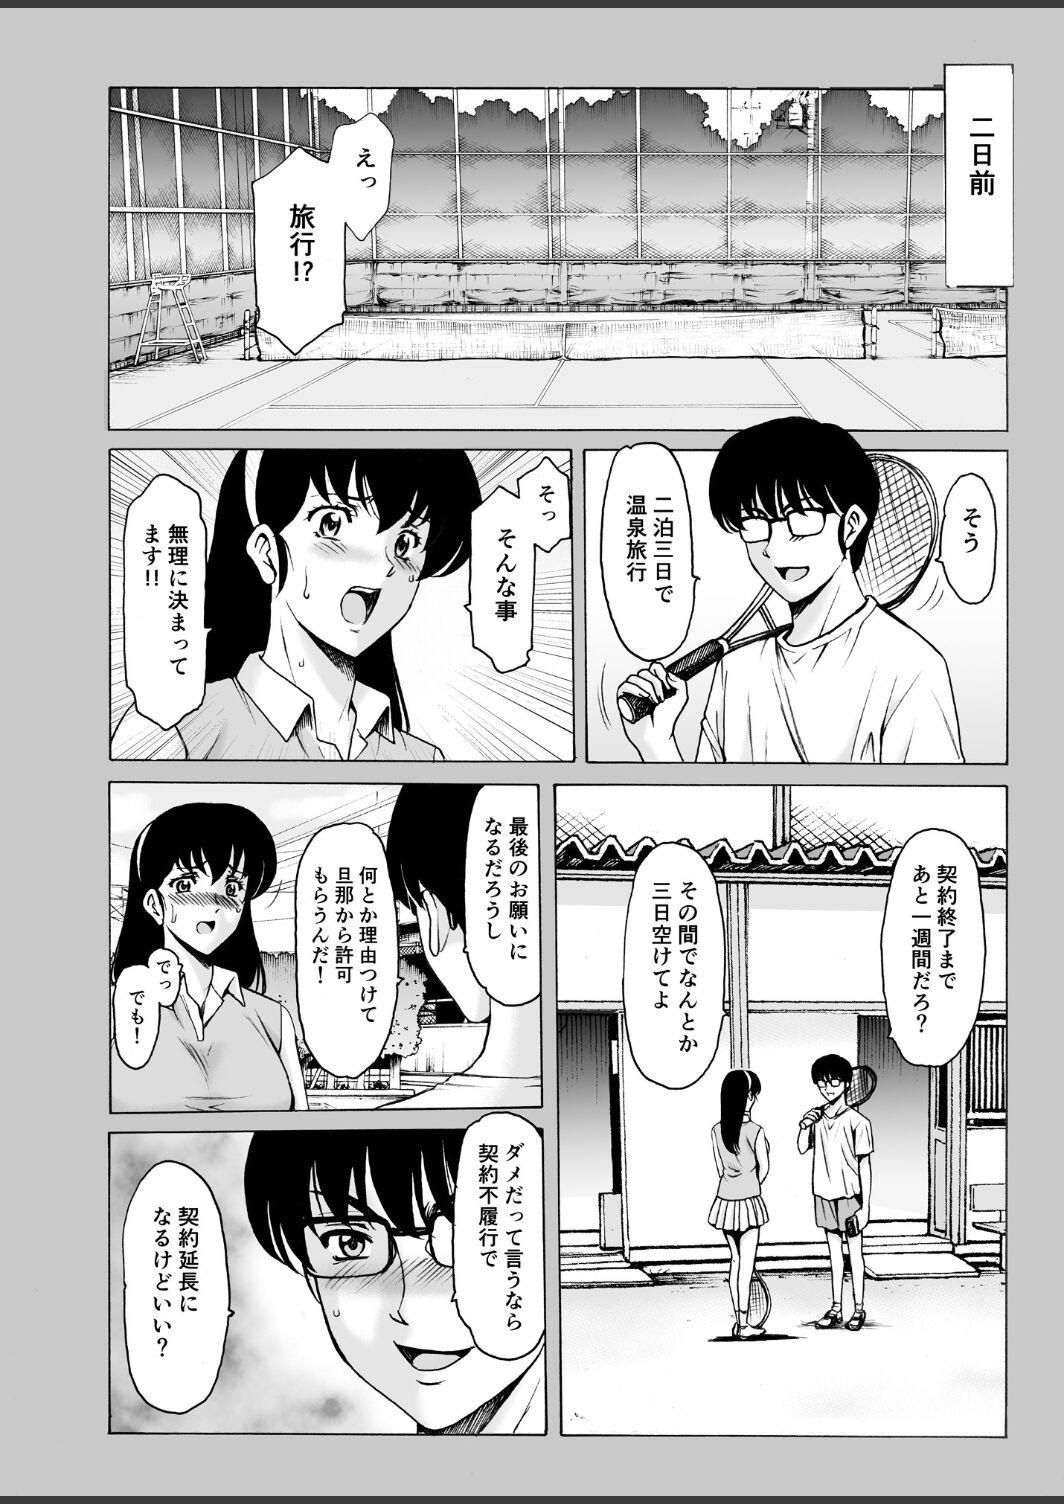 Chat Hitozuma Kanrinin Kyoko 10 - Maison ikkoku Stepmother - Page 4